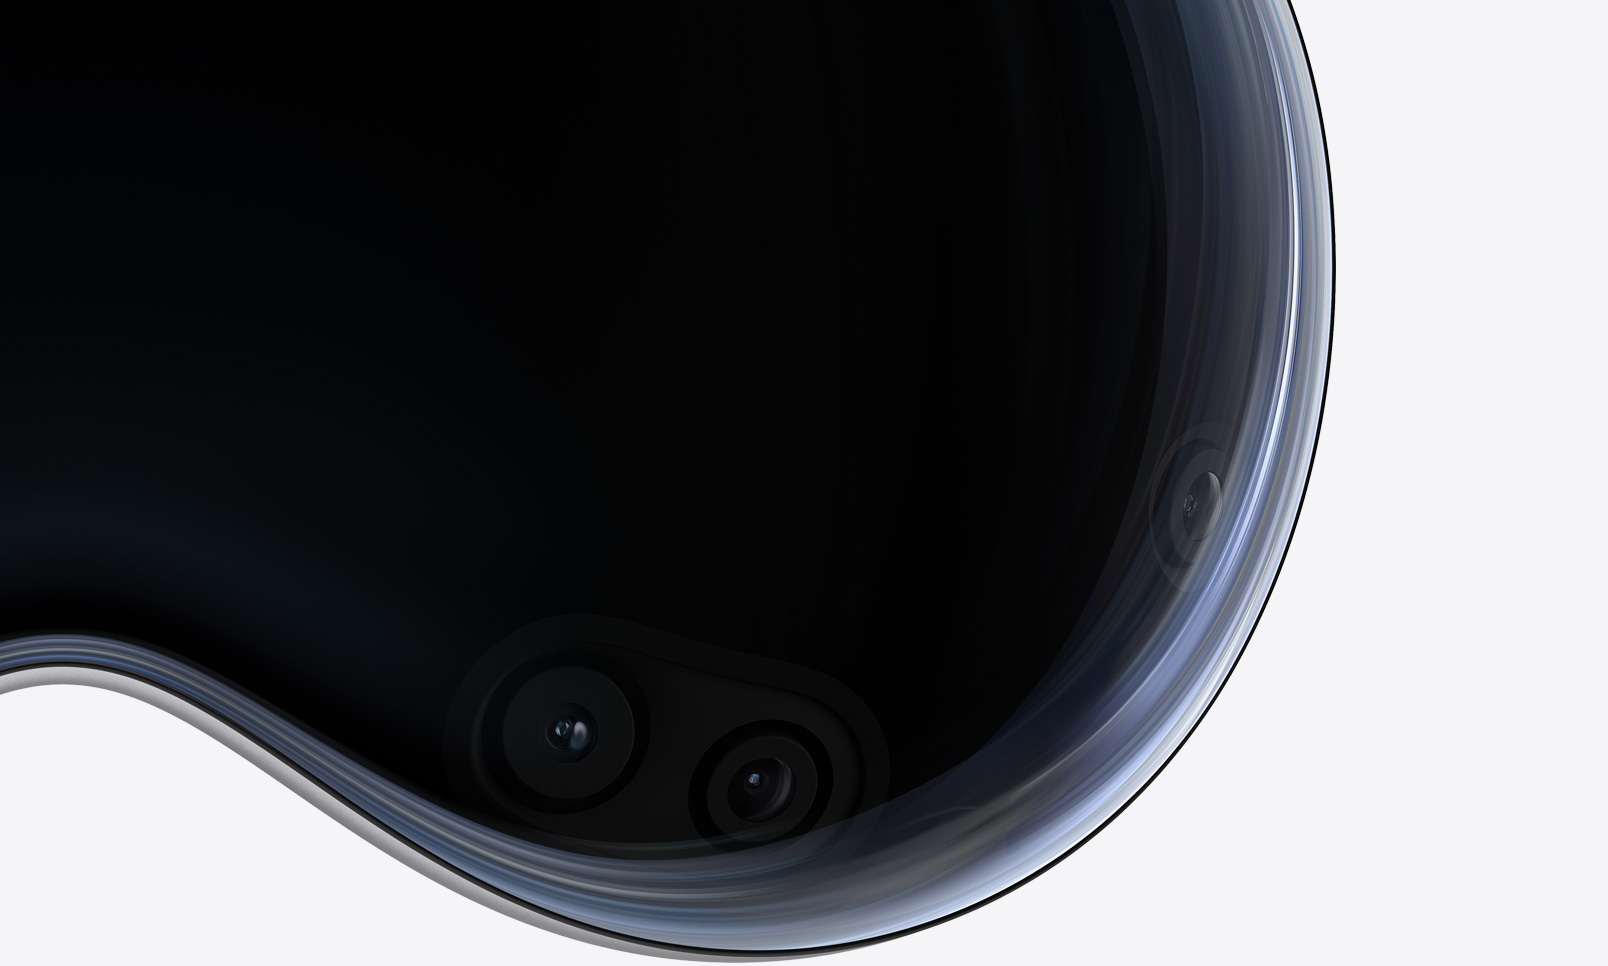 Eine Nahaufnahme der Frontansicht der Apple Vision Pro zeigt Kameras und Sensoren hinter dem gewölbten Glas